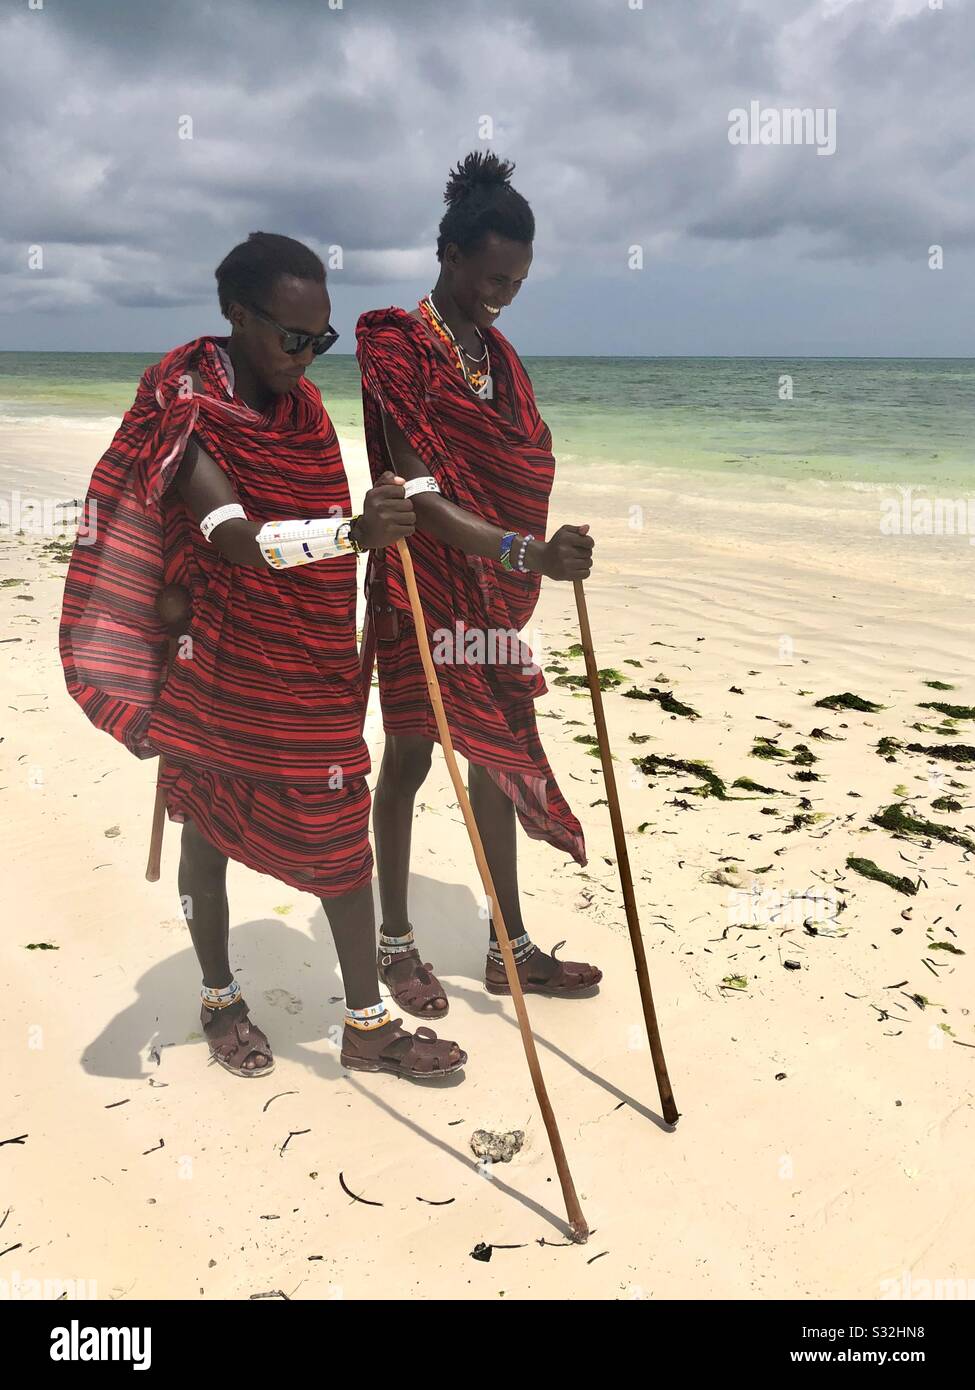 Masai warriors walking along the beach Stock Photo